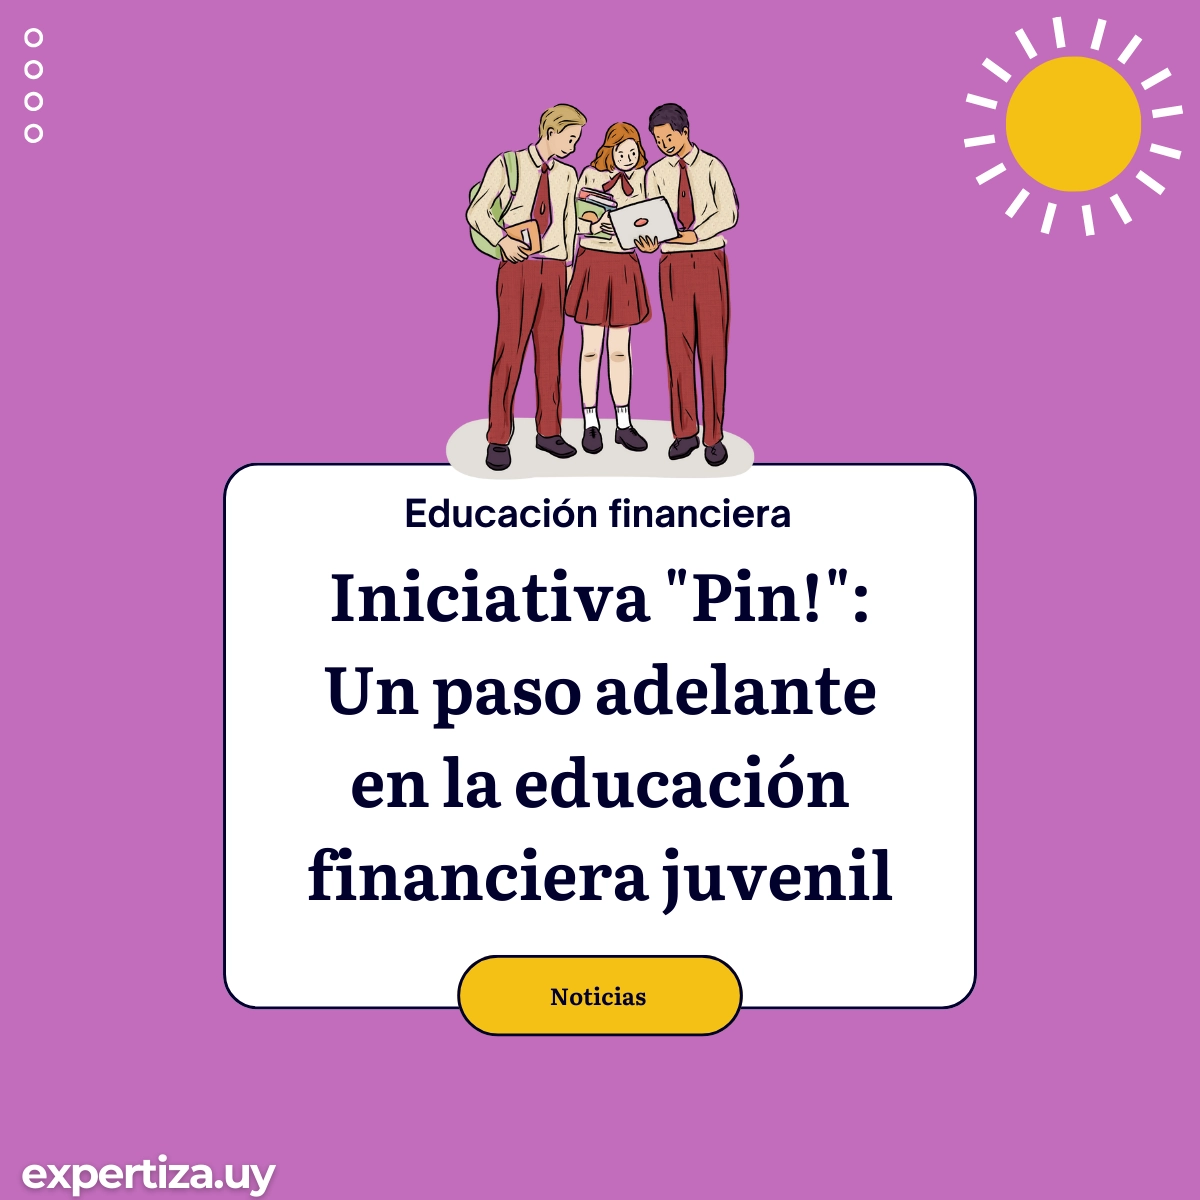 Iniciativa "Pin!": Un paso adelante en la educación financiera juvenil